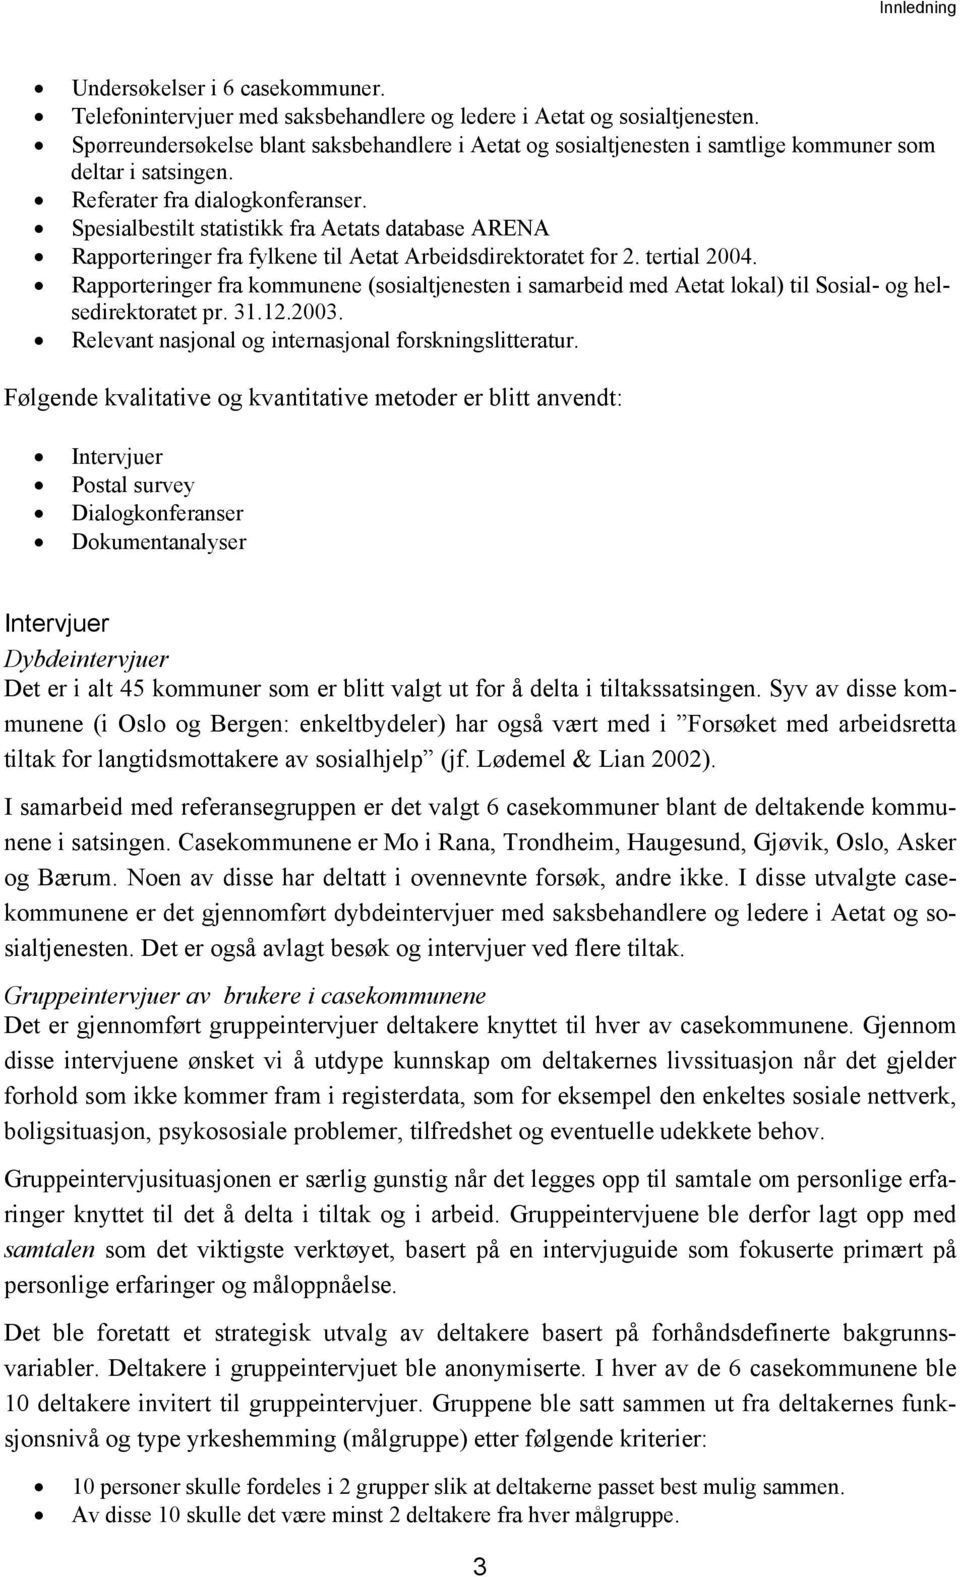 Spesialbestilt statistikk fra Aetats database ARENA Rapporteringer fra fylkene til Aetat Arbeidsdirektoratet for 2. tertial 2004.